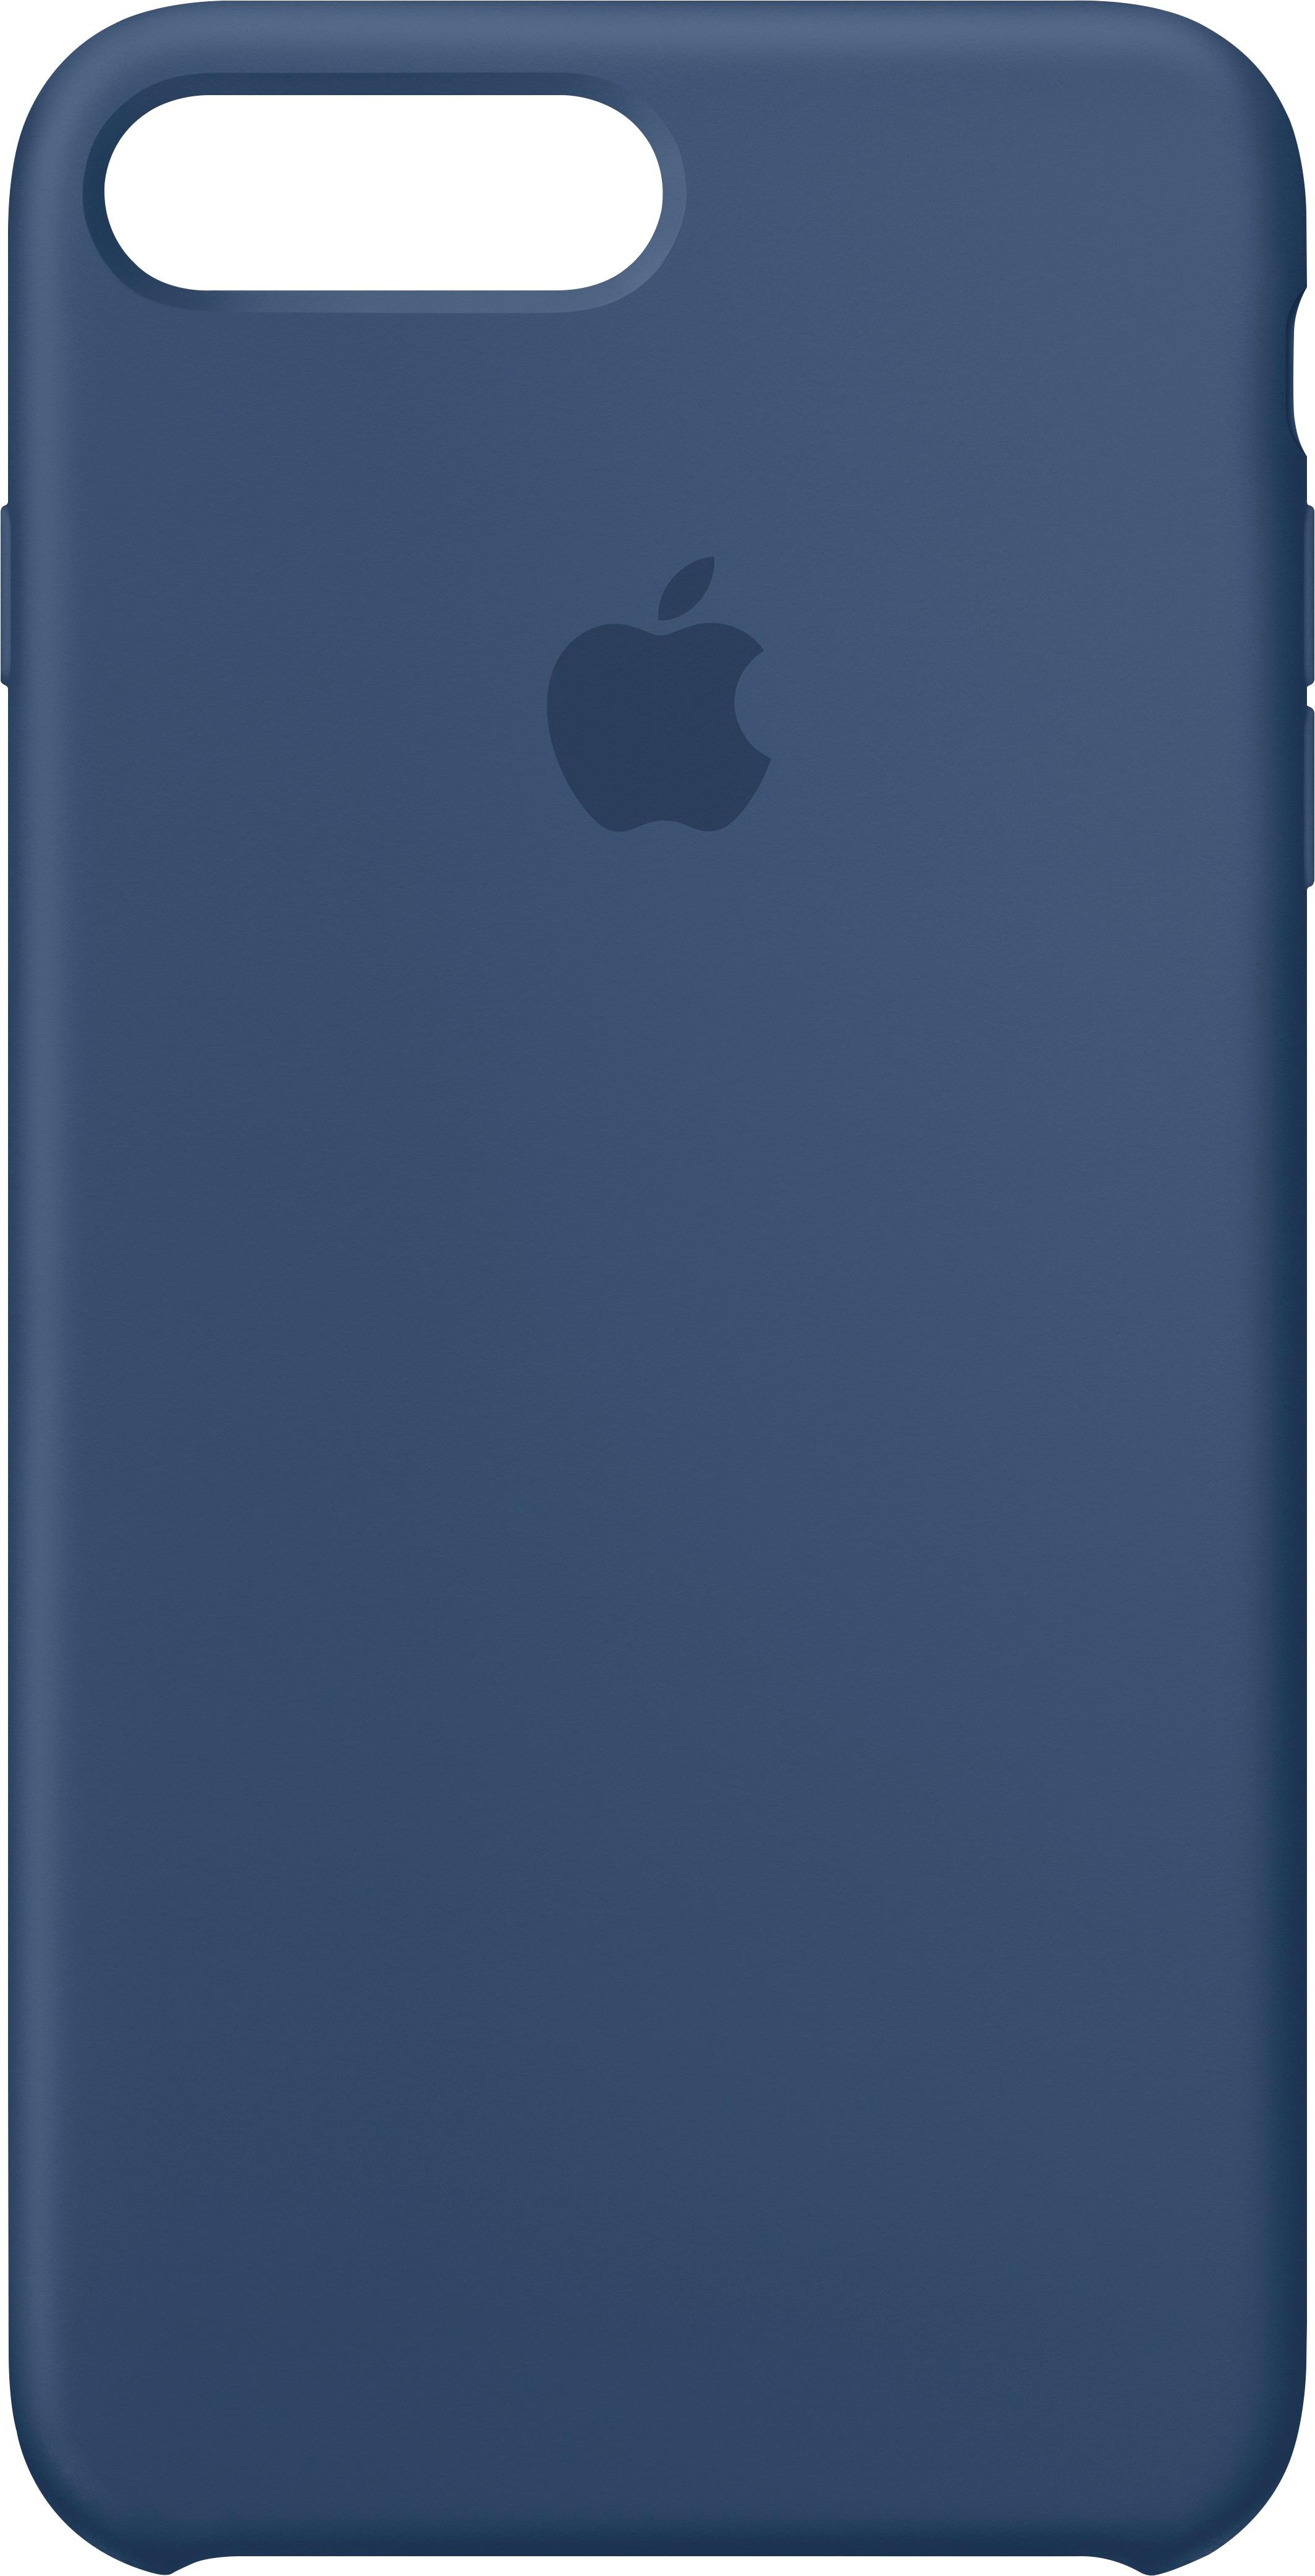 Apple iPhone® 8 Plus/7 Plus Silicone Case Blue Cobalt - Best Buy